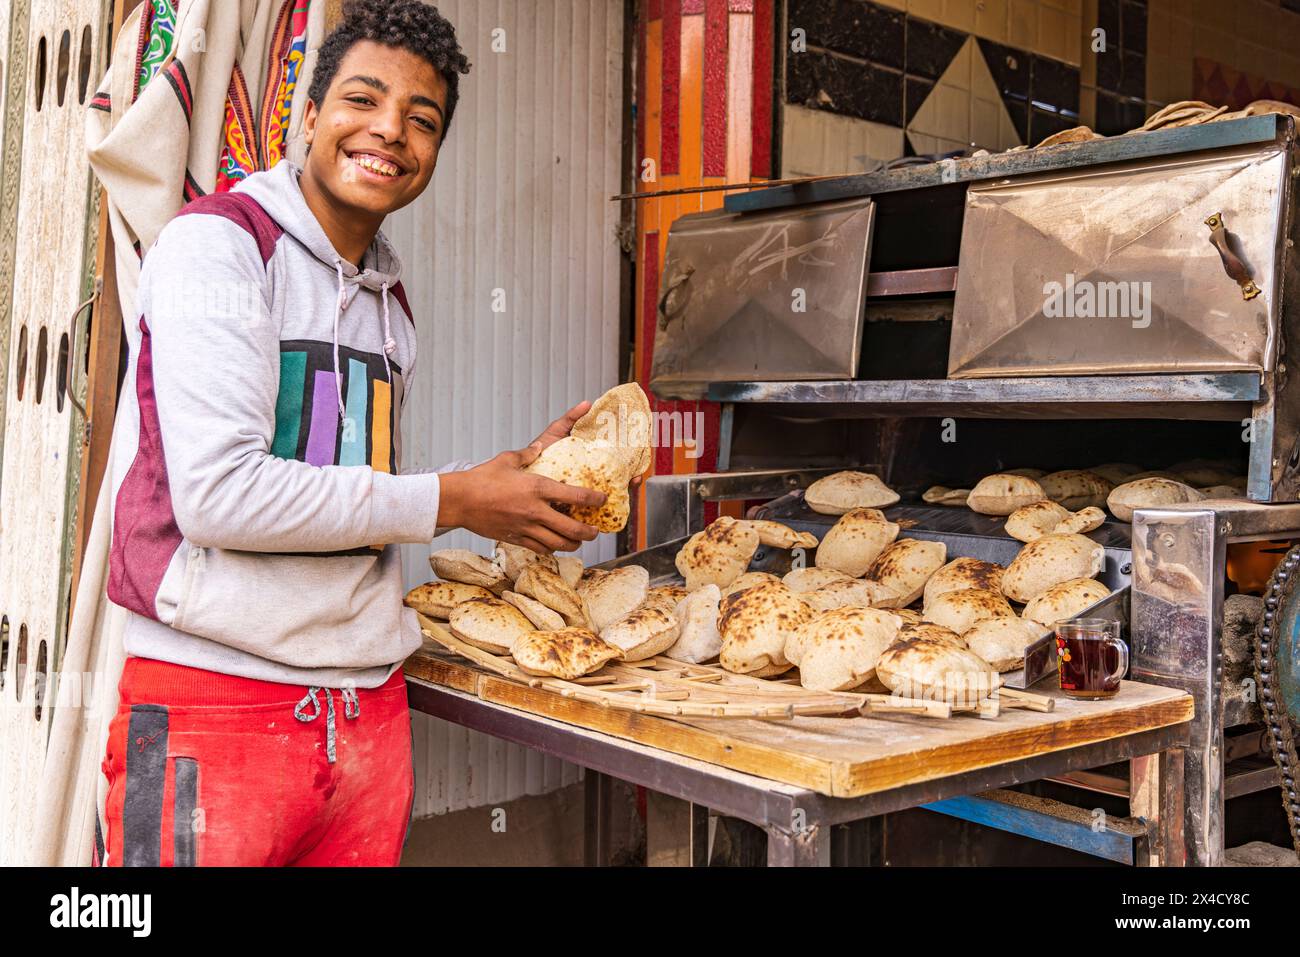 Manshiyat Naser, Garbage City, le Caire, Égypte. Jeune homme vendant du pain pita frais, connu sous le nom d'aish. (Usage éditorial uniquement) Banque D'Images